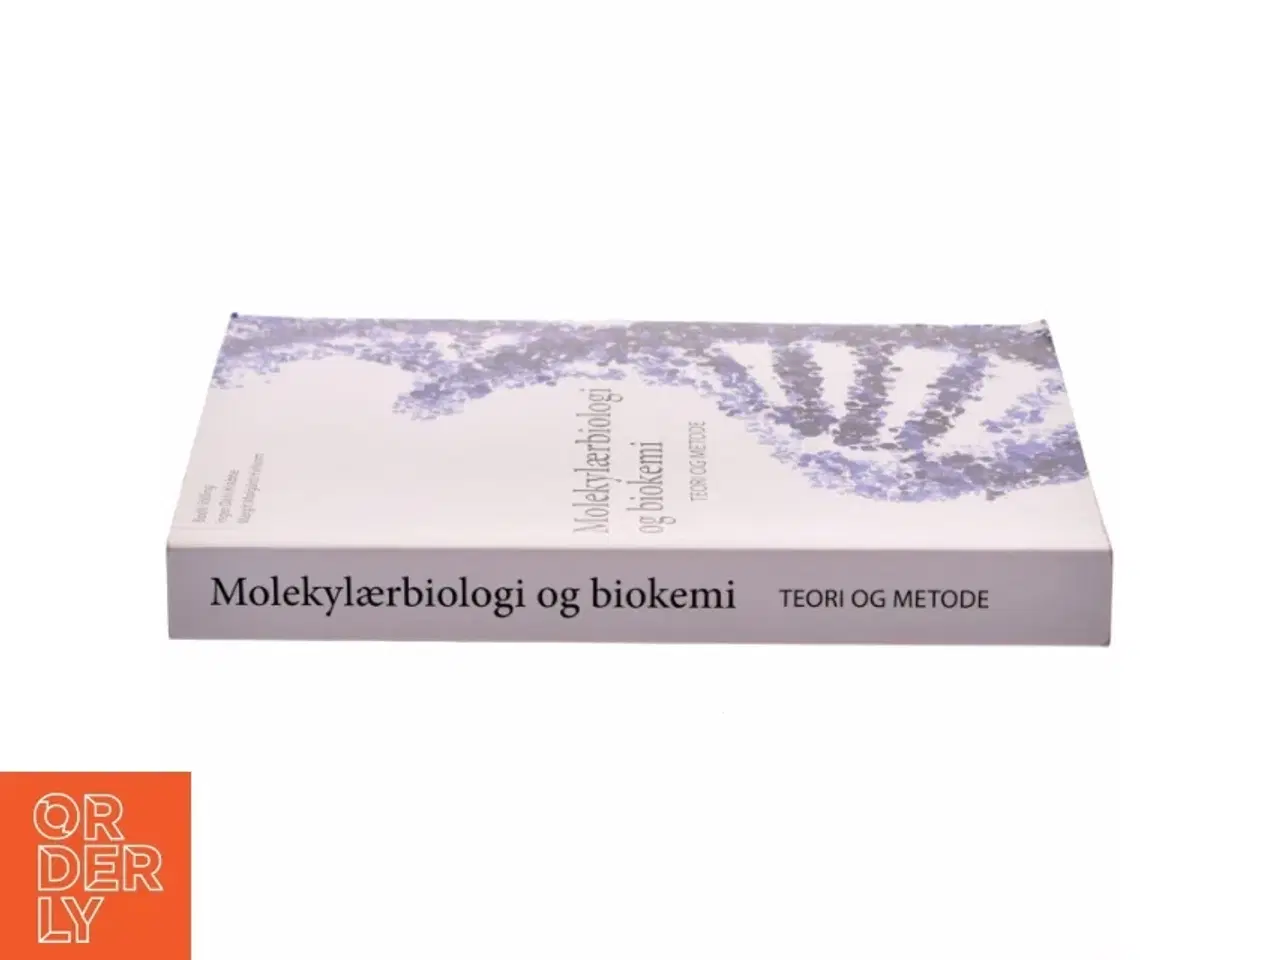 Billede 2 - Molekylærbiologi og biokemi - Teori og metode fra Nyt Teknisk Forlag